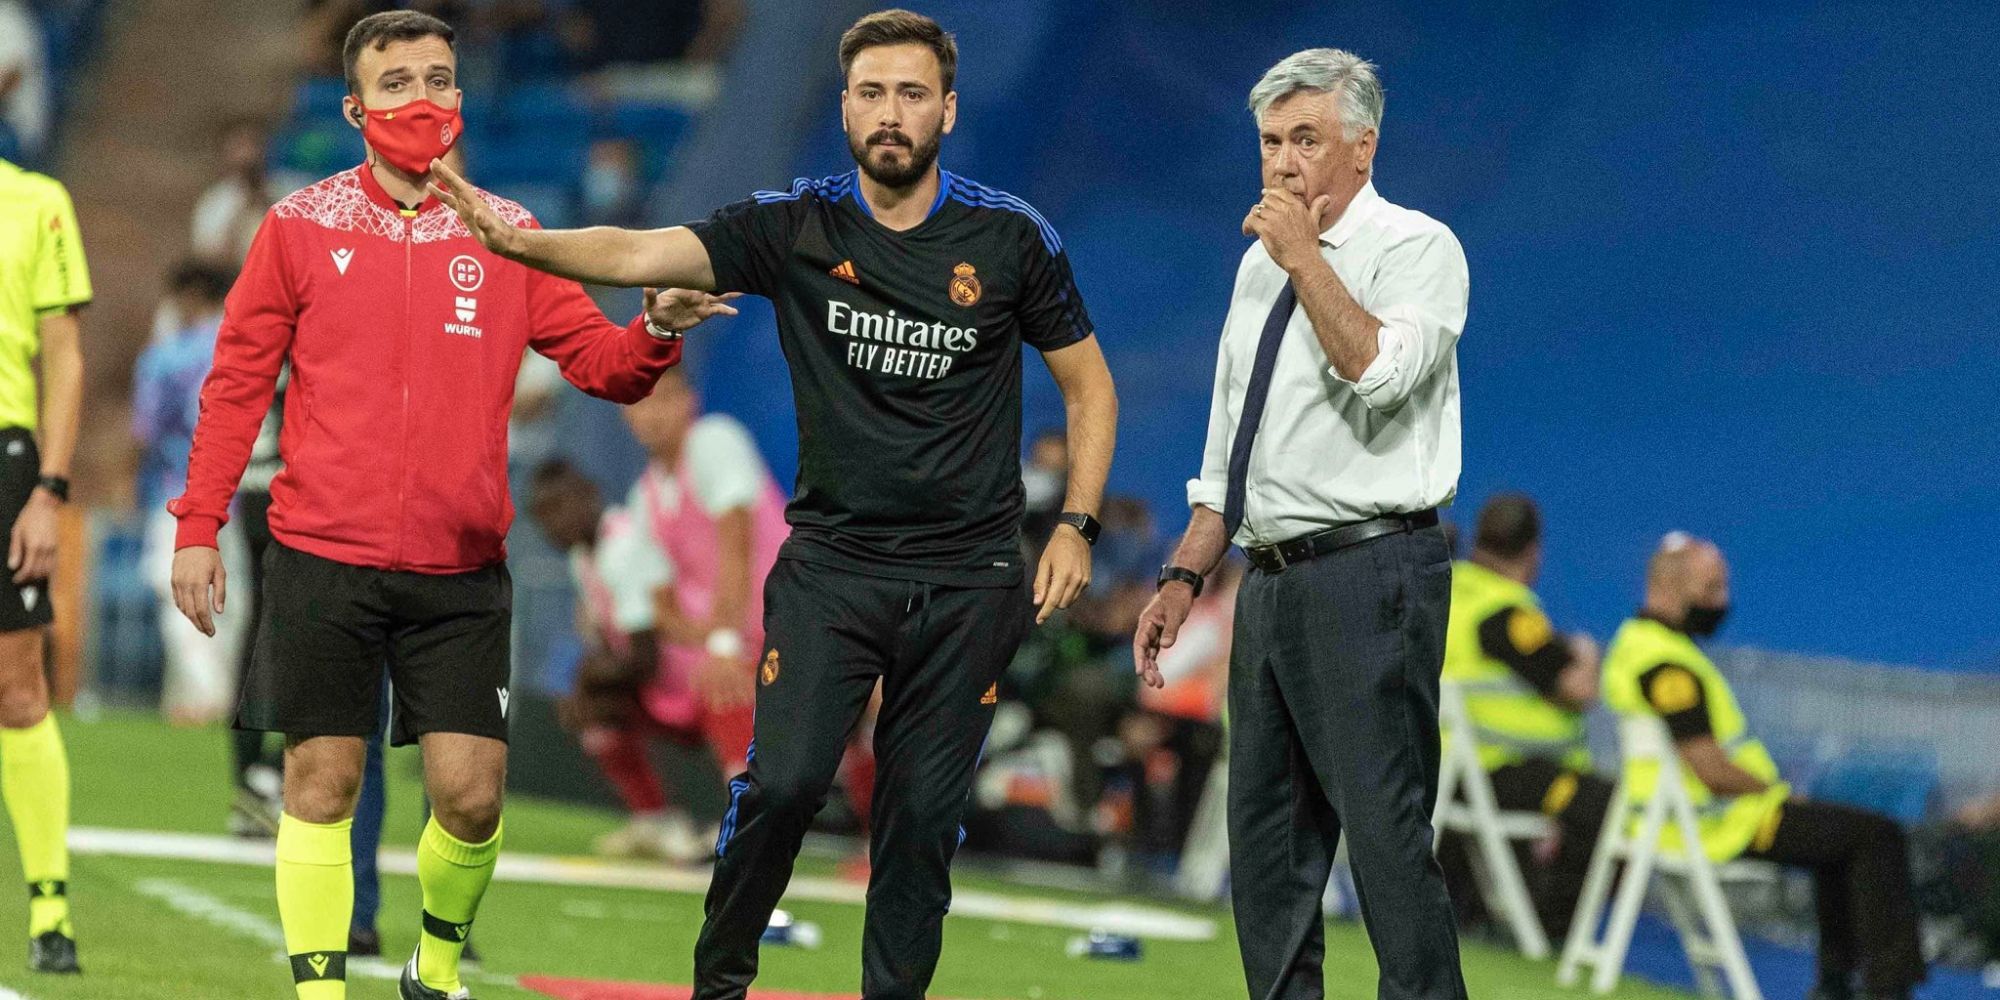 Carlo Ancelotti and his son Davide Ancelotti manage Real Madrid